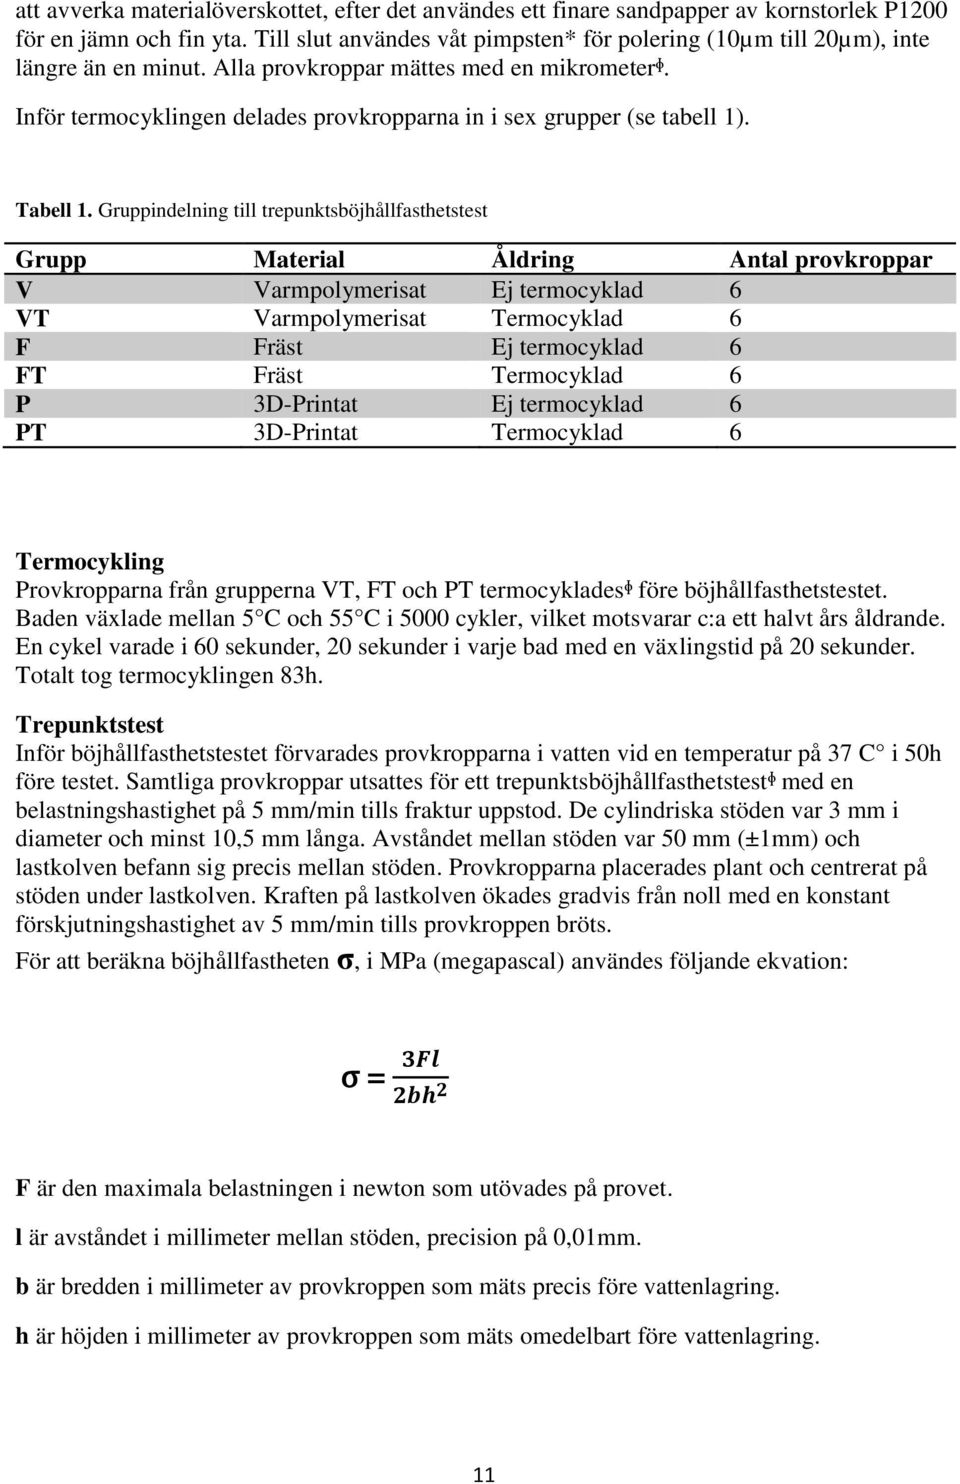 Inför termocyklingen delades provkropparna in i sex grupper (se tabell 1). Tabell 1.